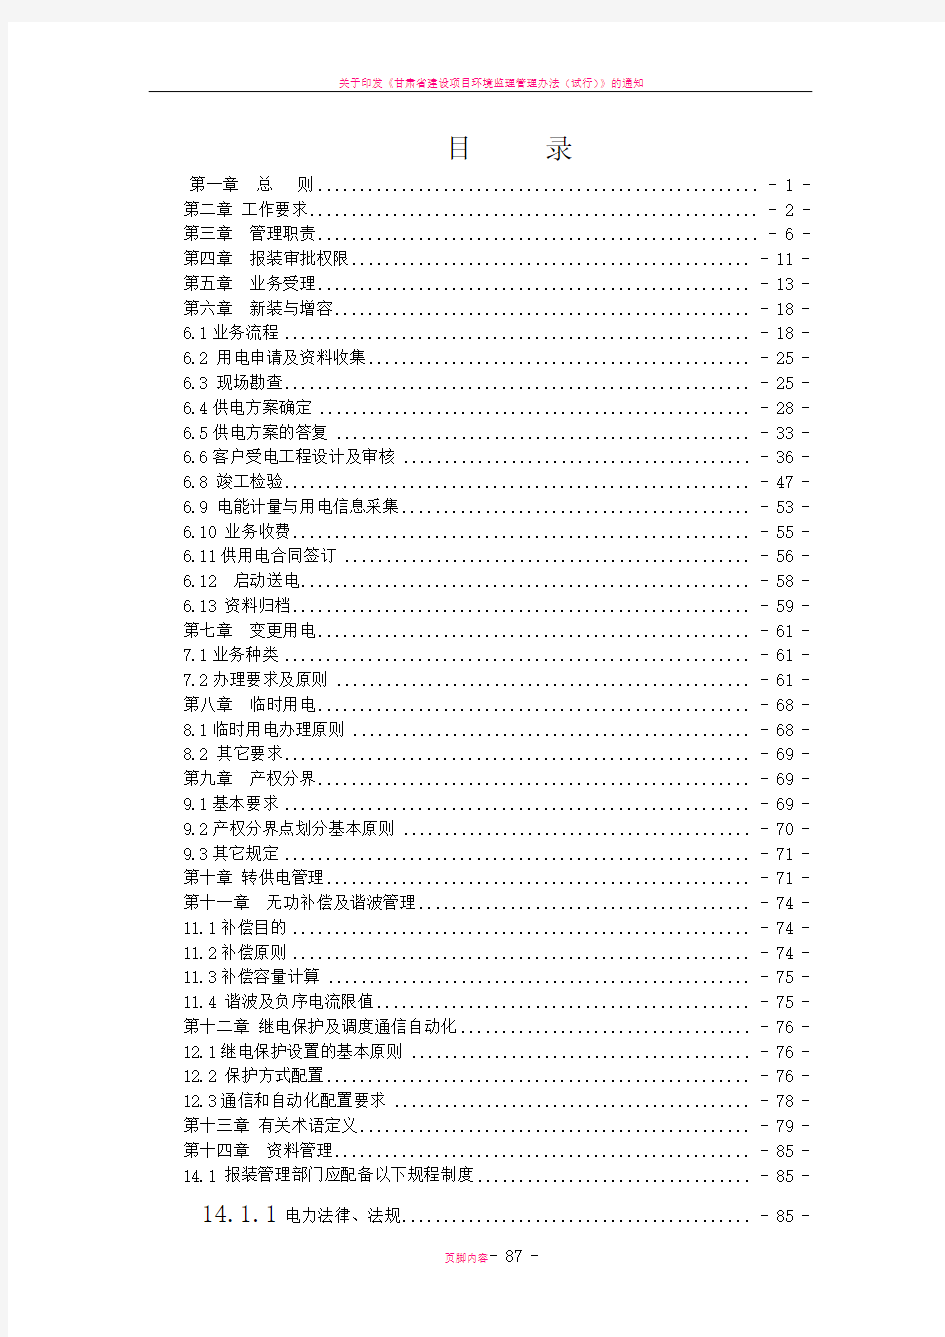 甘肃省电力公司业扩报装管理制度(2012.6月修订稿)[1]1